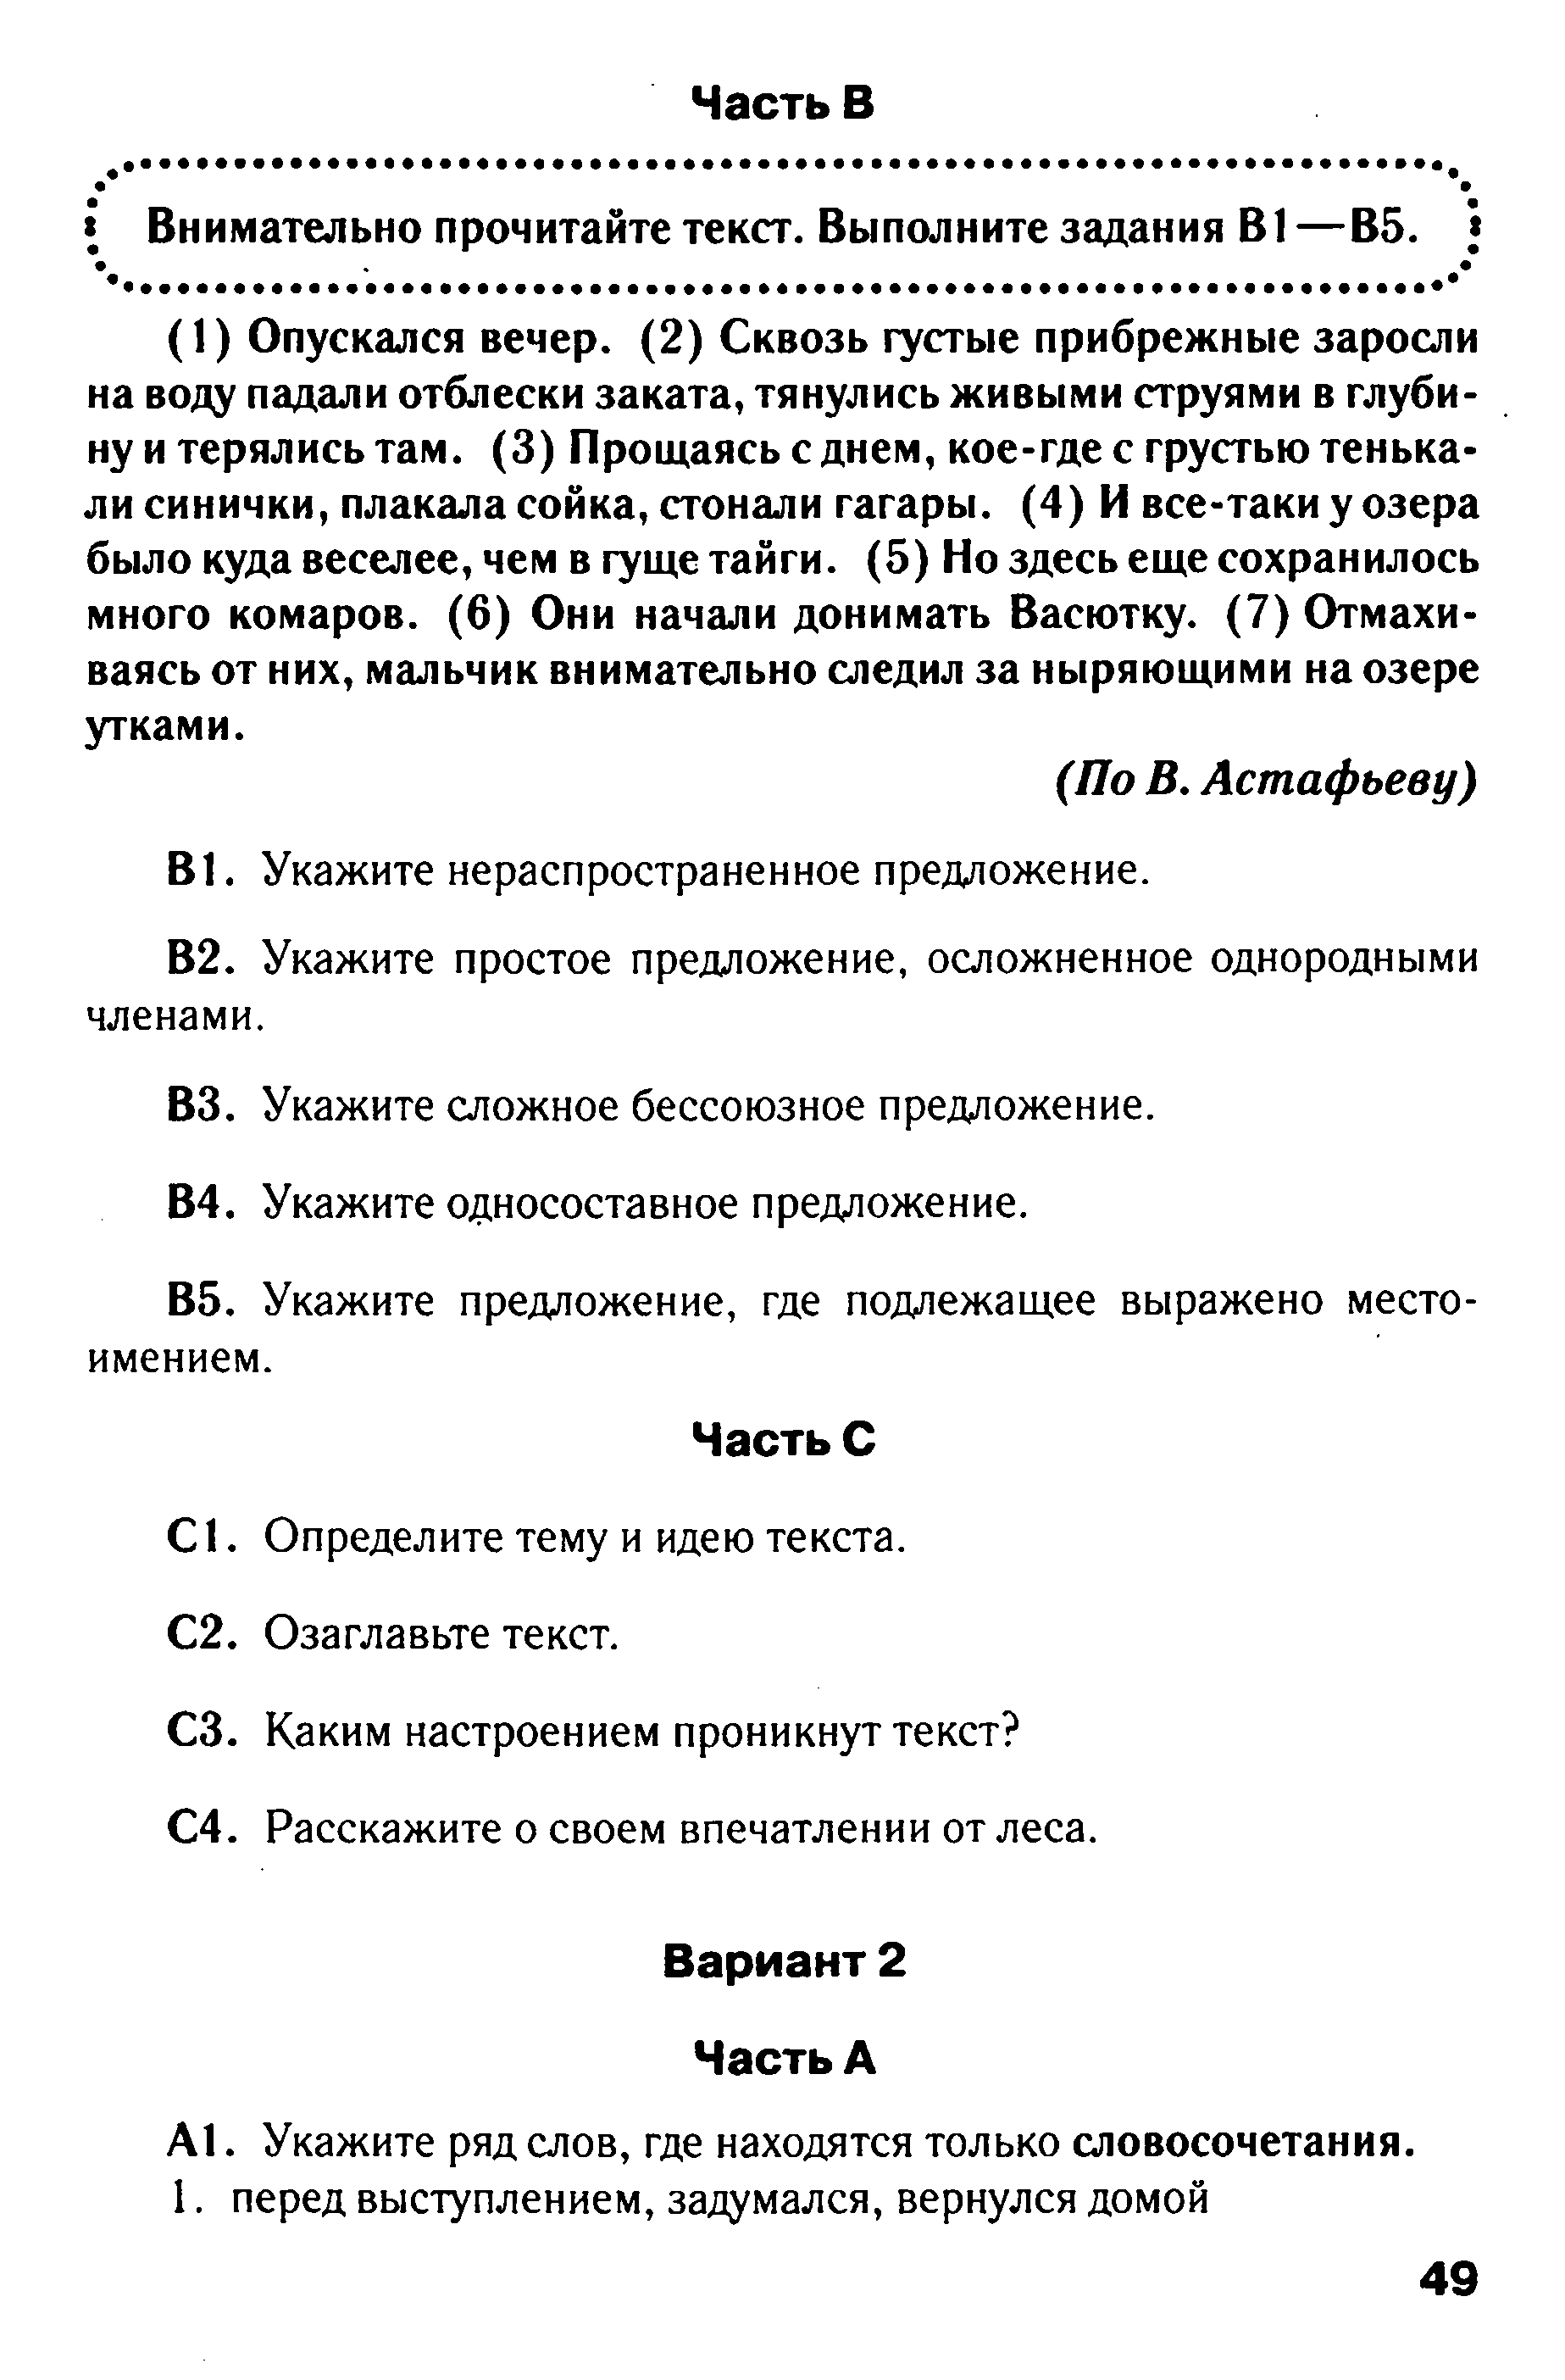 Тест по русскому языку в формате ГИА на тему: Синтаксис вариант 2 (5 класс)